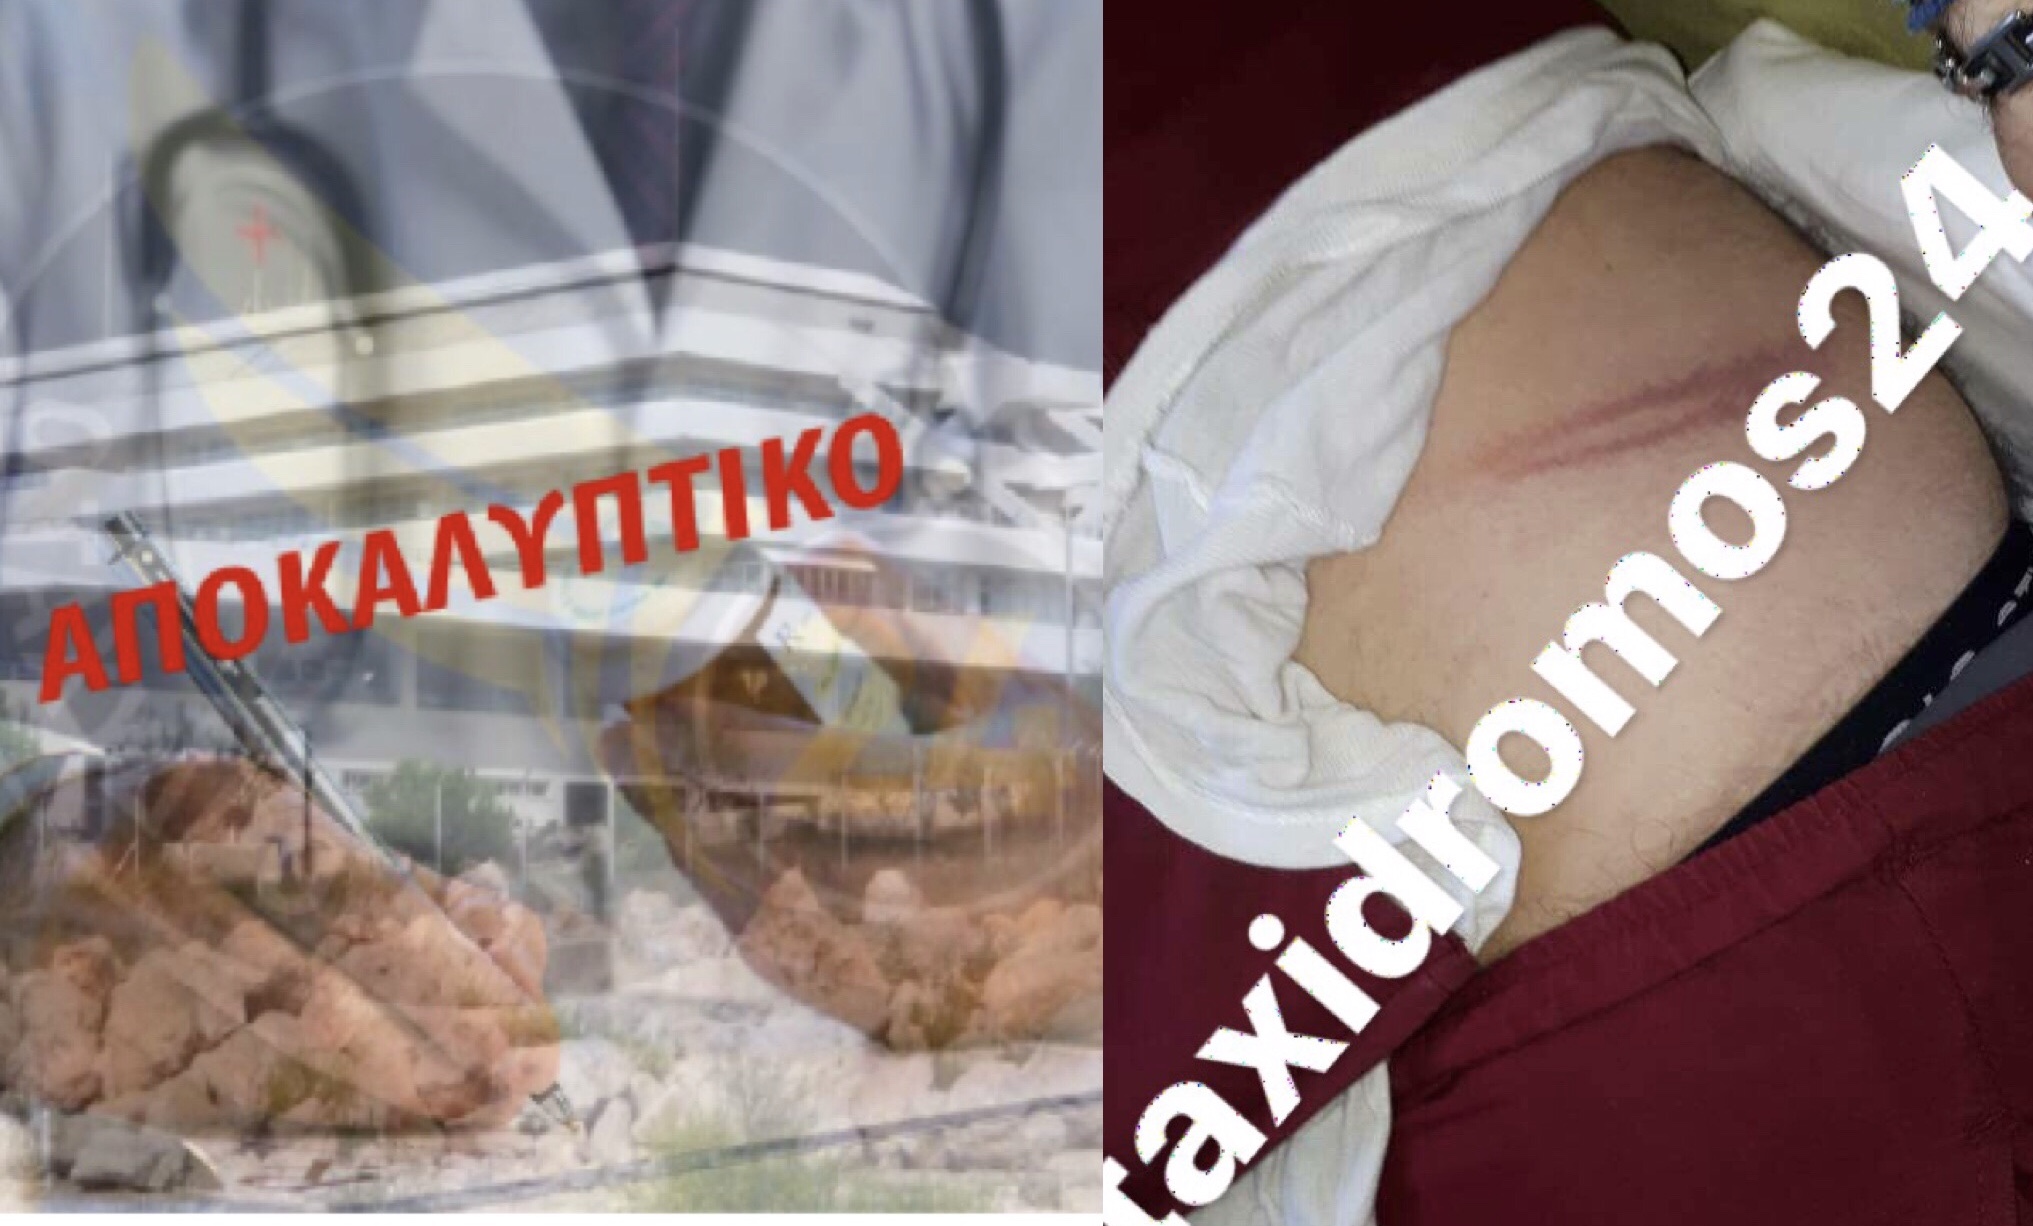 ΑΠΟΚΑΛΥΠΤΙΚΟ - Πάφος: Ασθενής «μαινόμενος ταύρος» επιτέθηκε σε γιατρό - Του «γύρισε» το μπαστούνι - ΦΩΤΟΓΡΑΦΙΕΣ